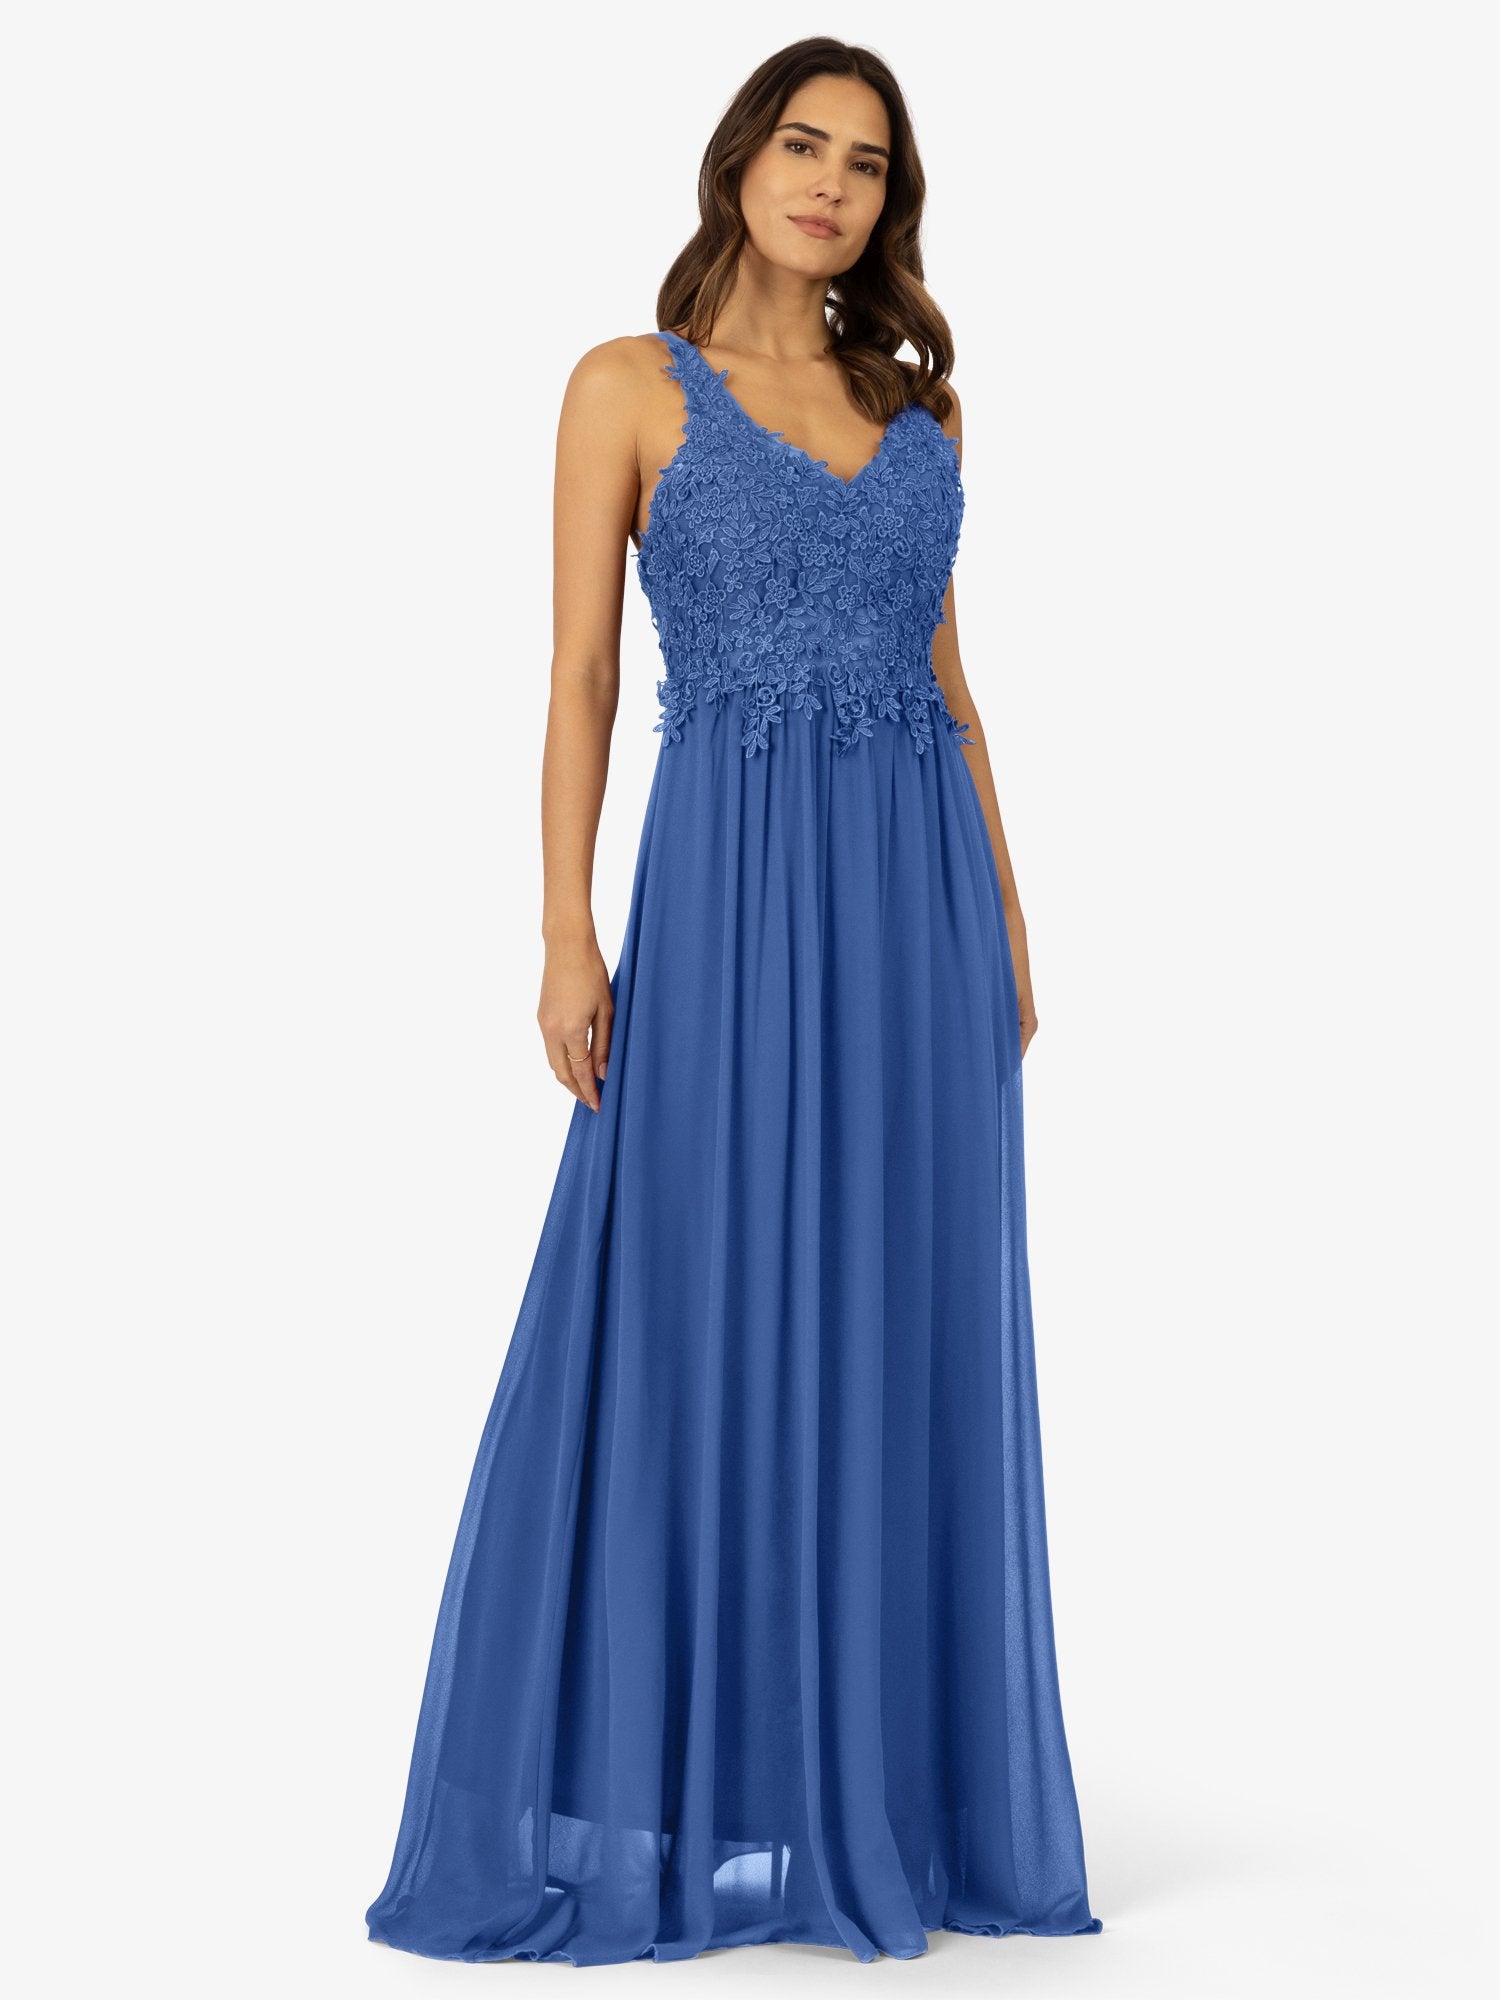 APART Abendkleid mit tiefem V-Ausschnitt und Rückenausschnitt | royal blau